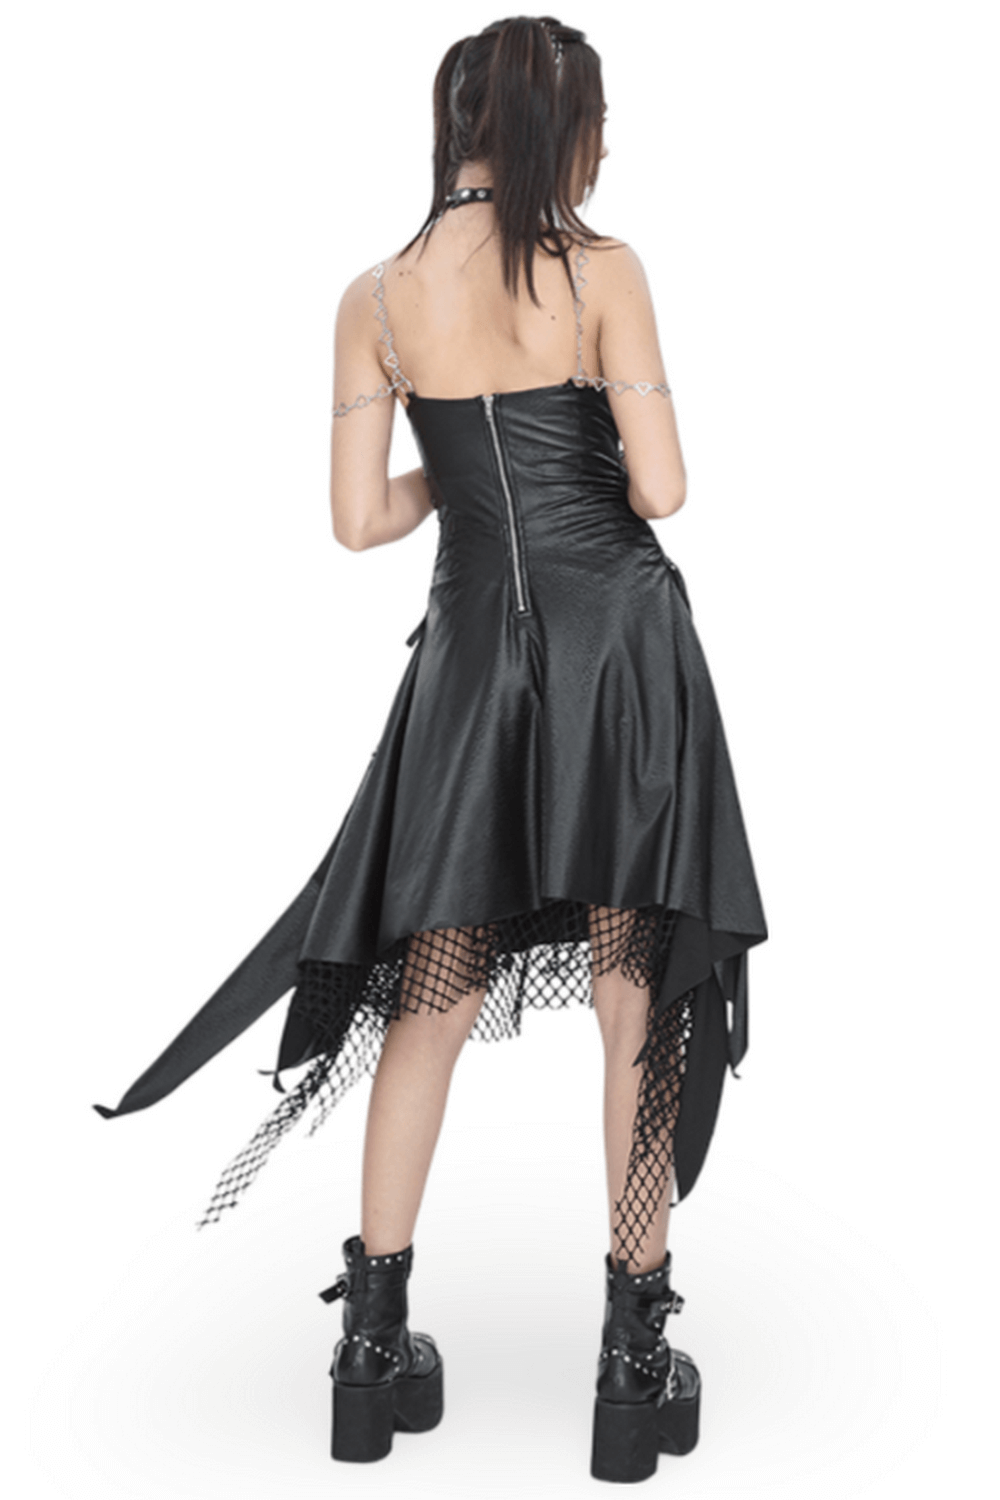 Vestido gótico negro con corsé con cordones y detalle de rejilla